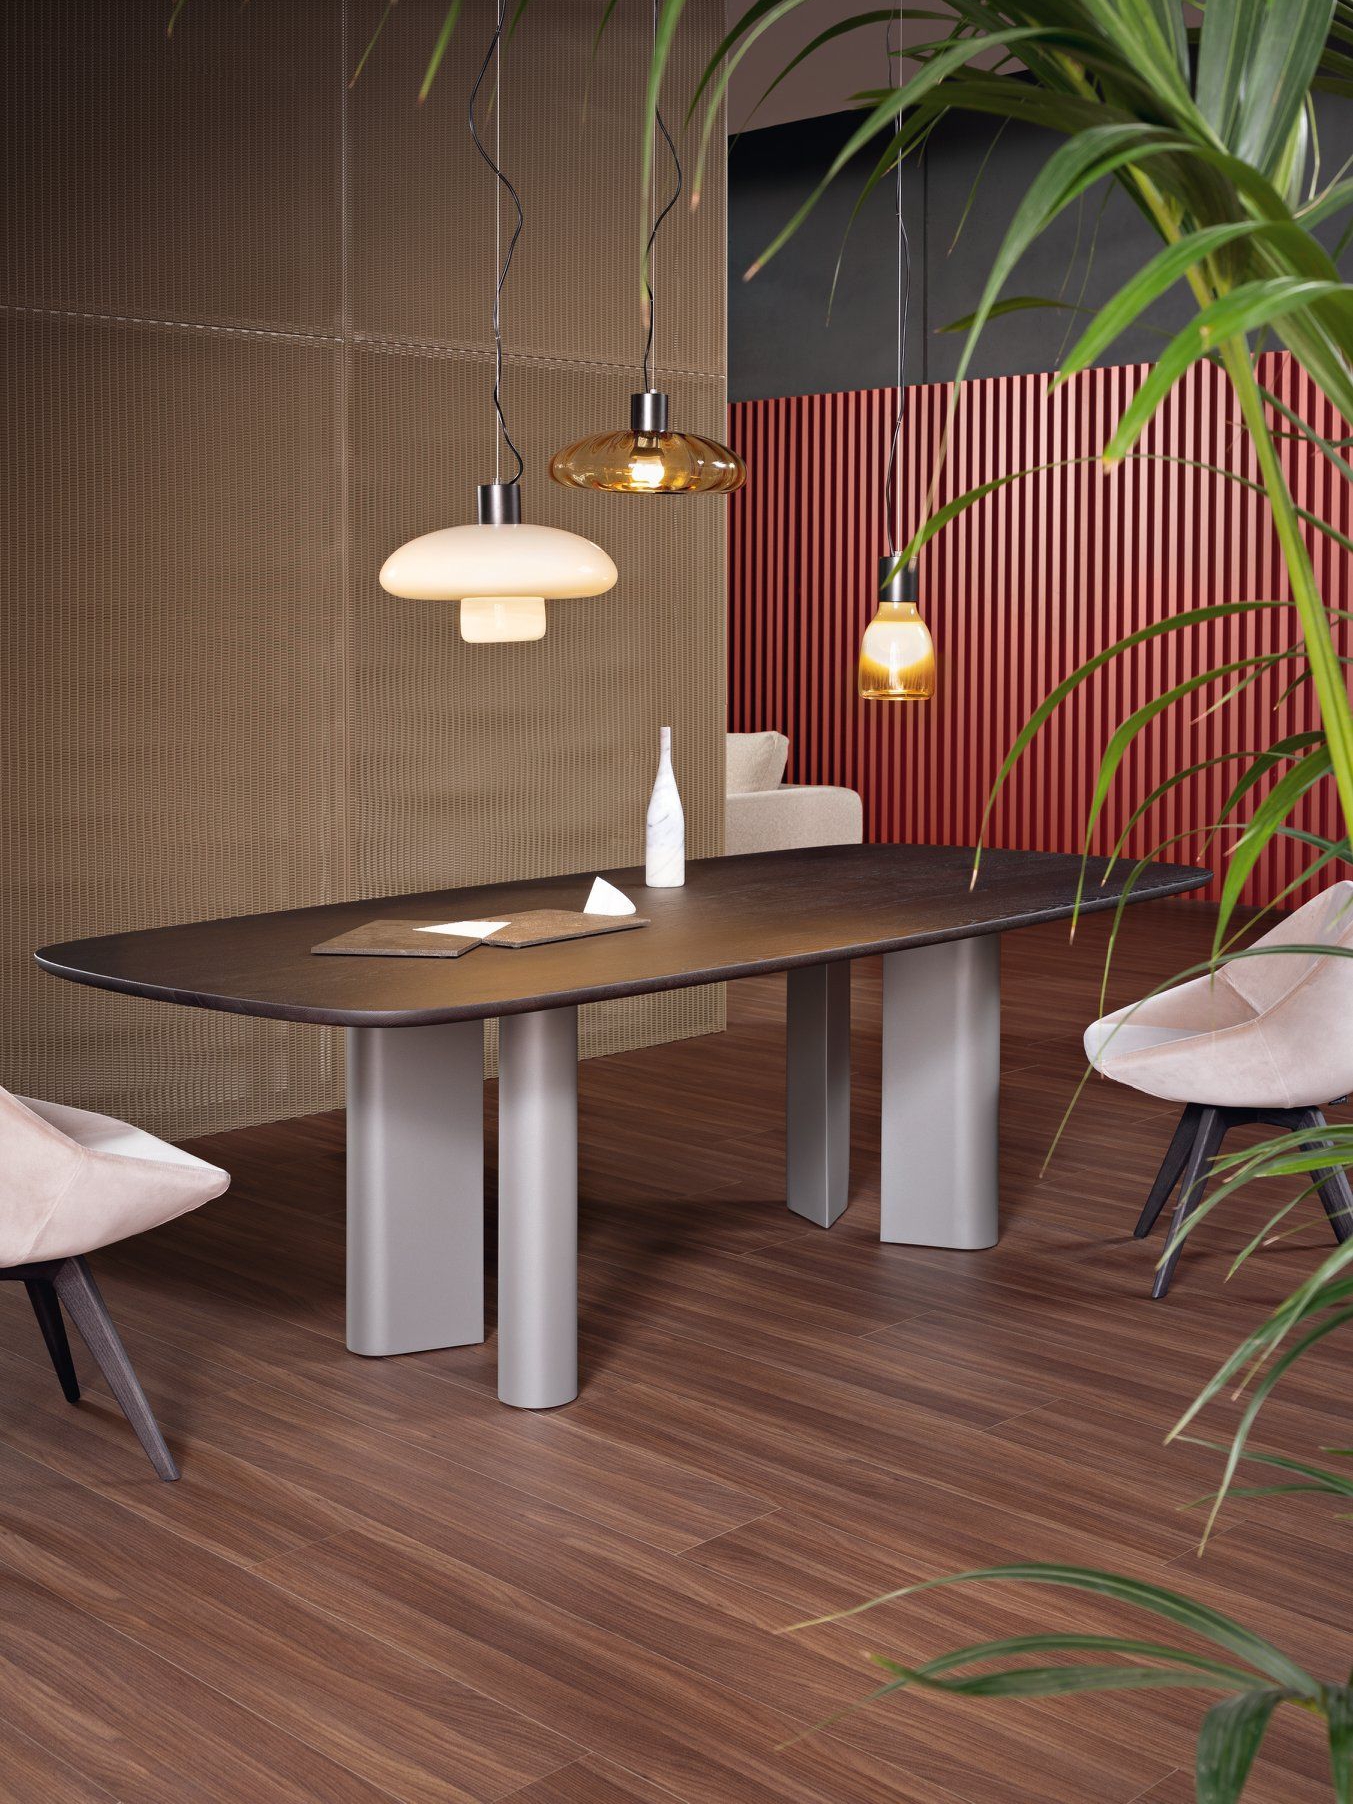 北欧设计极简实木长桌现代简约餐桌创意办公桌书桌个性洽谈会议桌